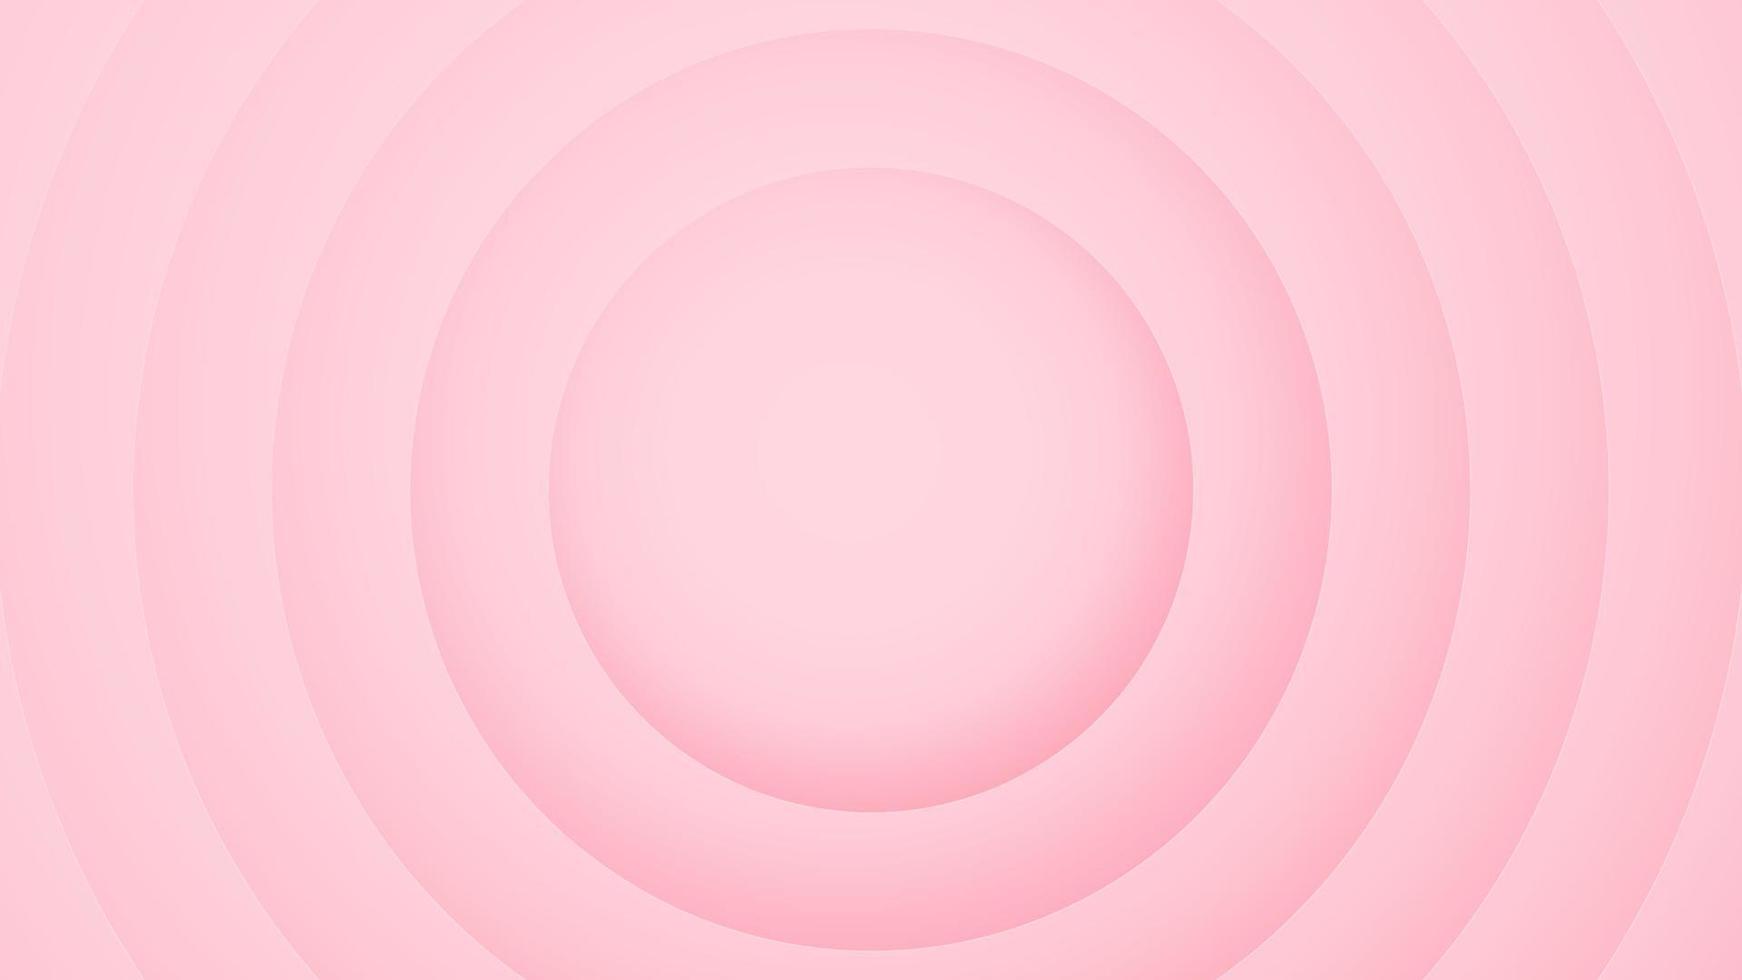 fundo rosa. desenho abstrato do círculo. ilustração vetorial. eps10 vetor